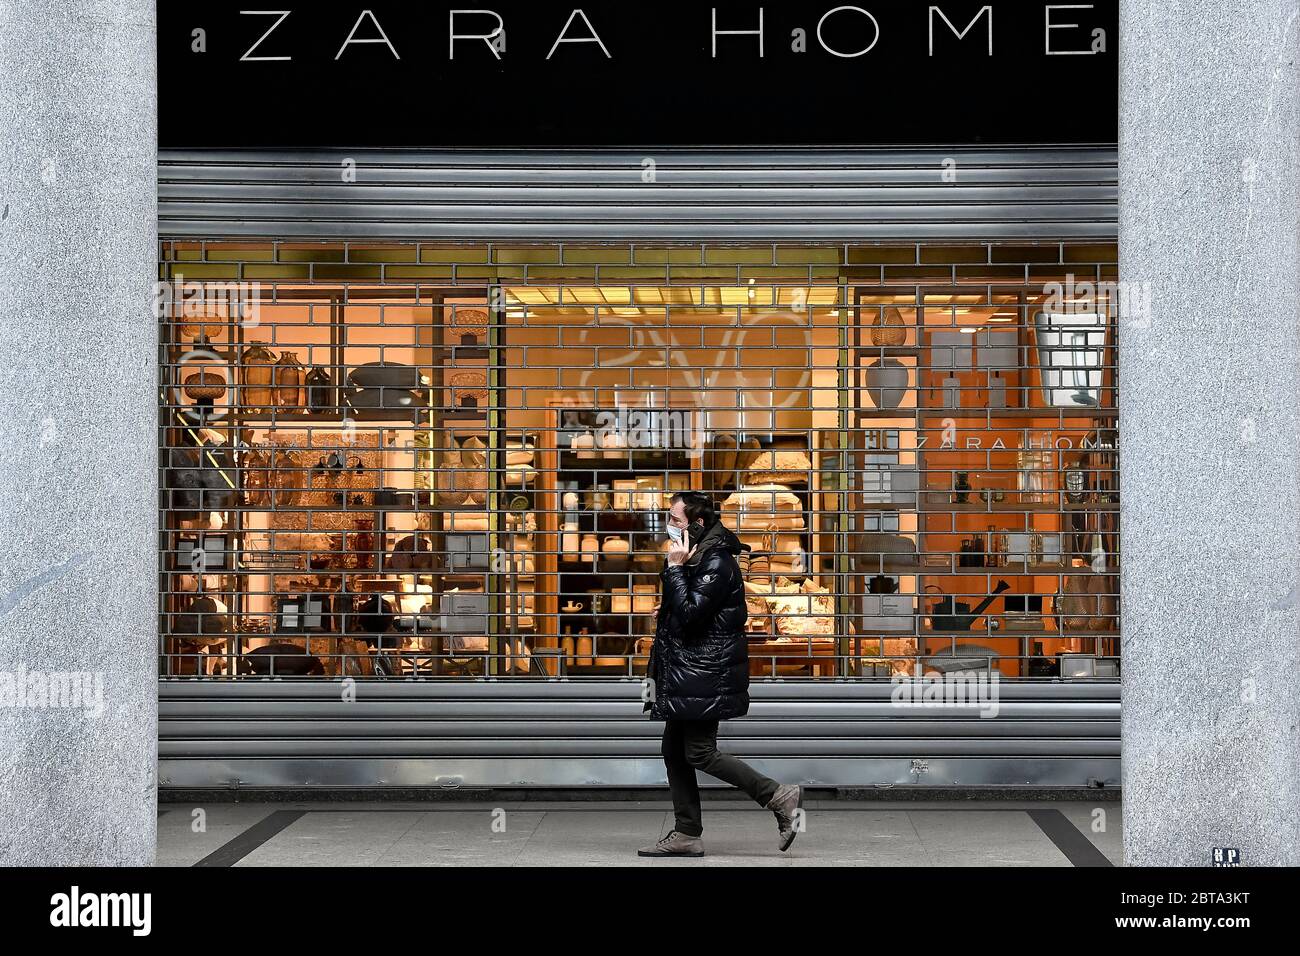 Zara home shop immagini e fotografie stock ad alta risoluzione - Alamy